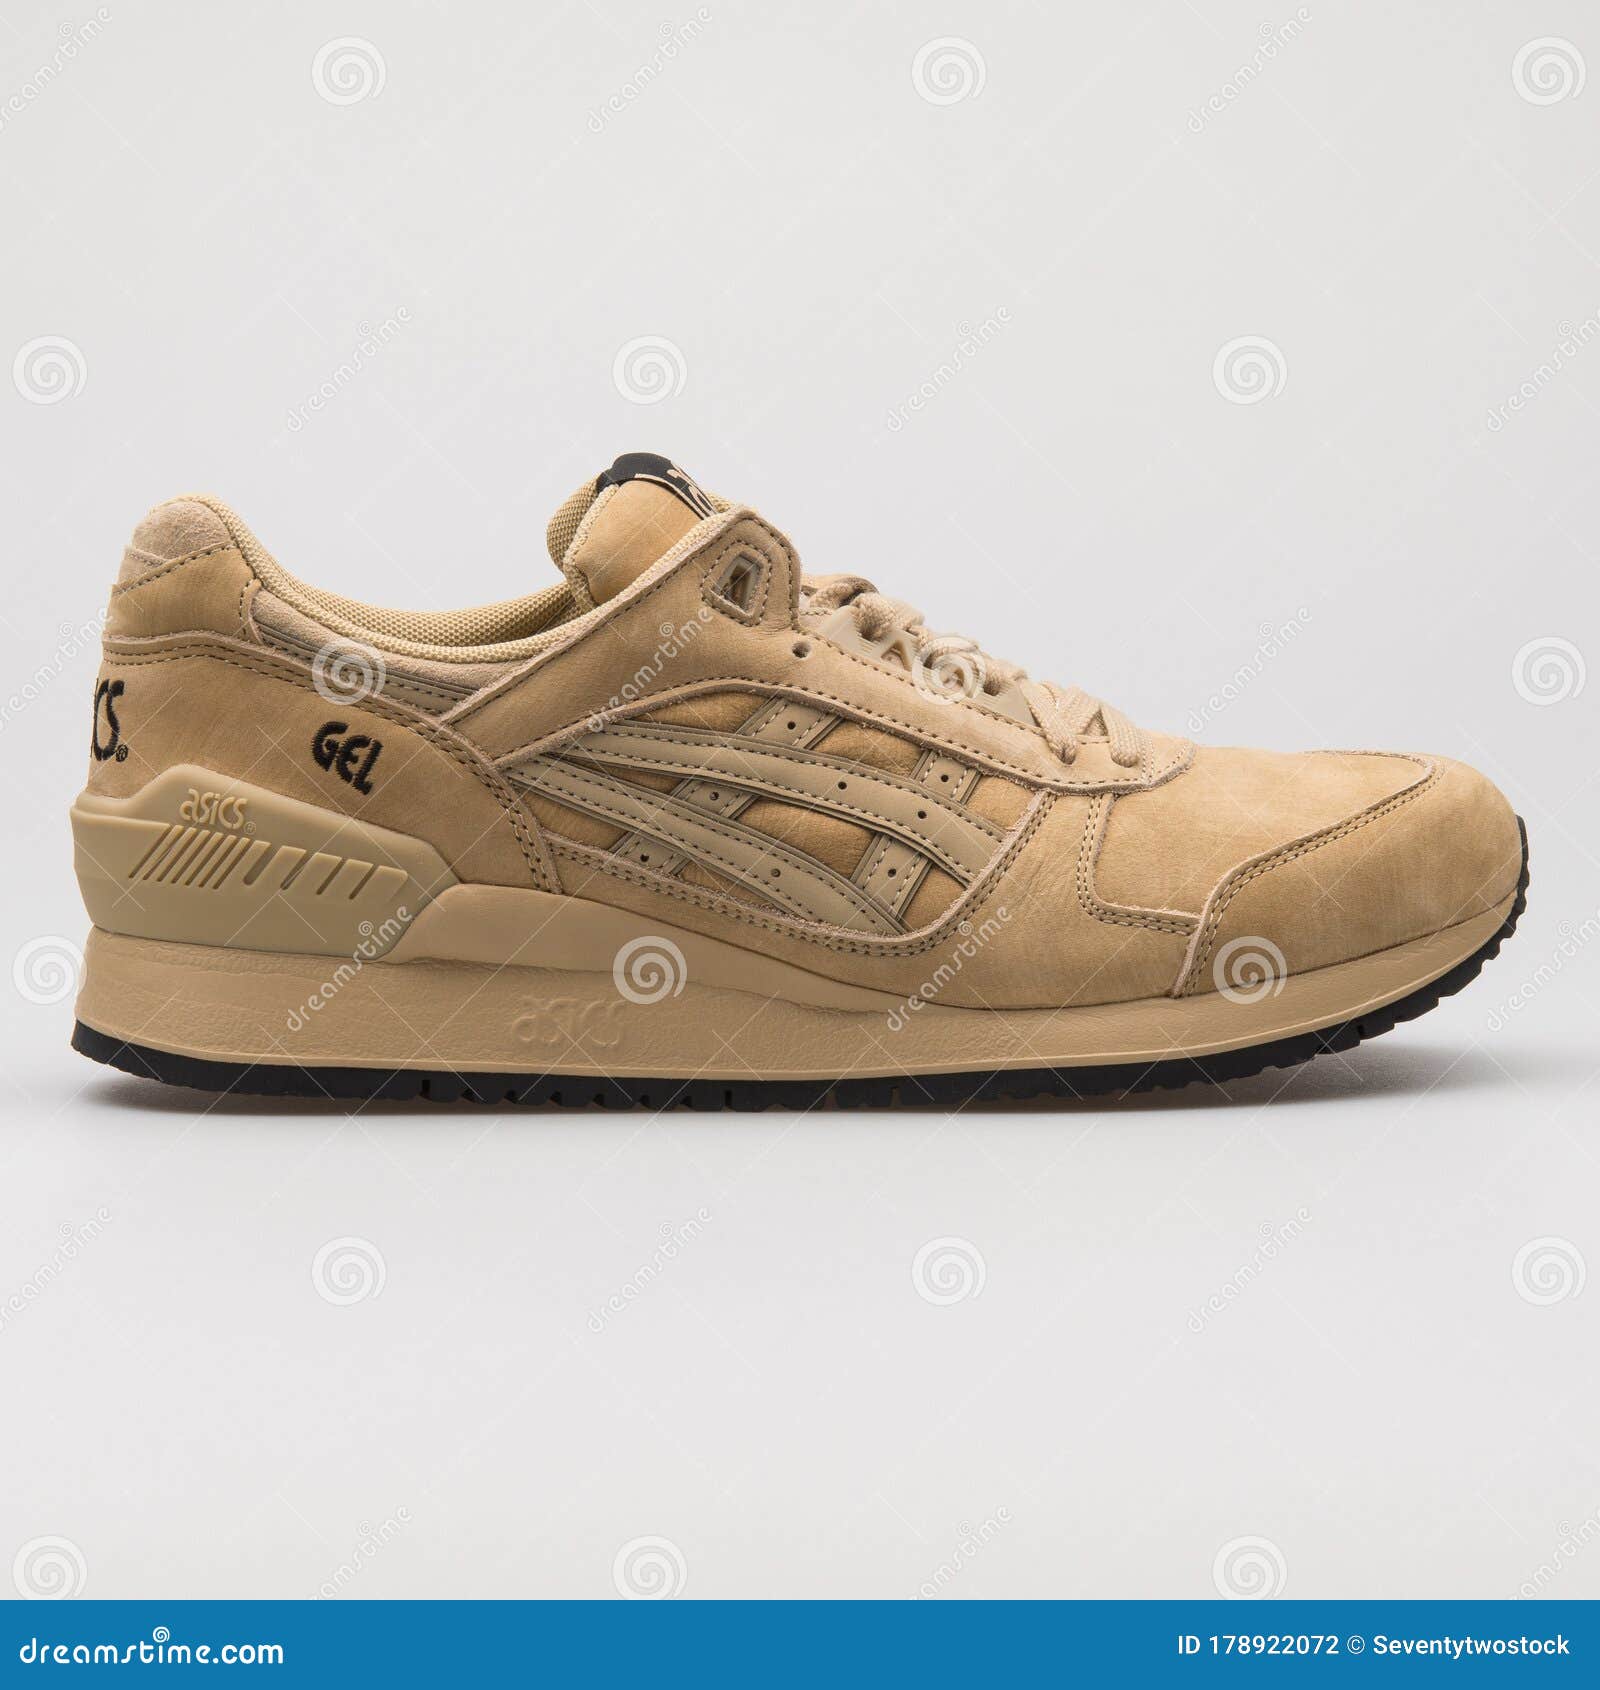 Asics Gel Respector Khaki Sneaker Editorial - Image of side, equipment: 178922072